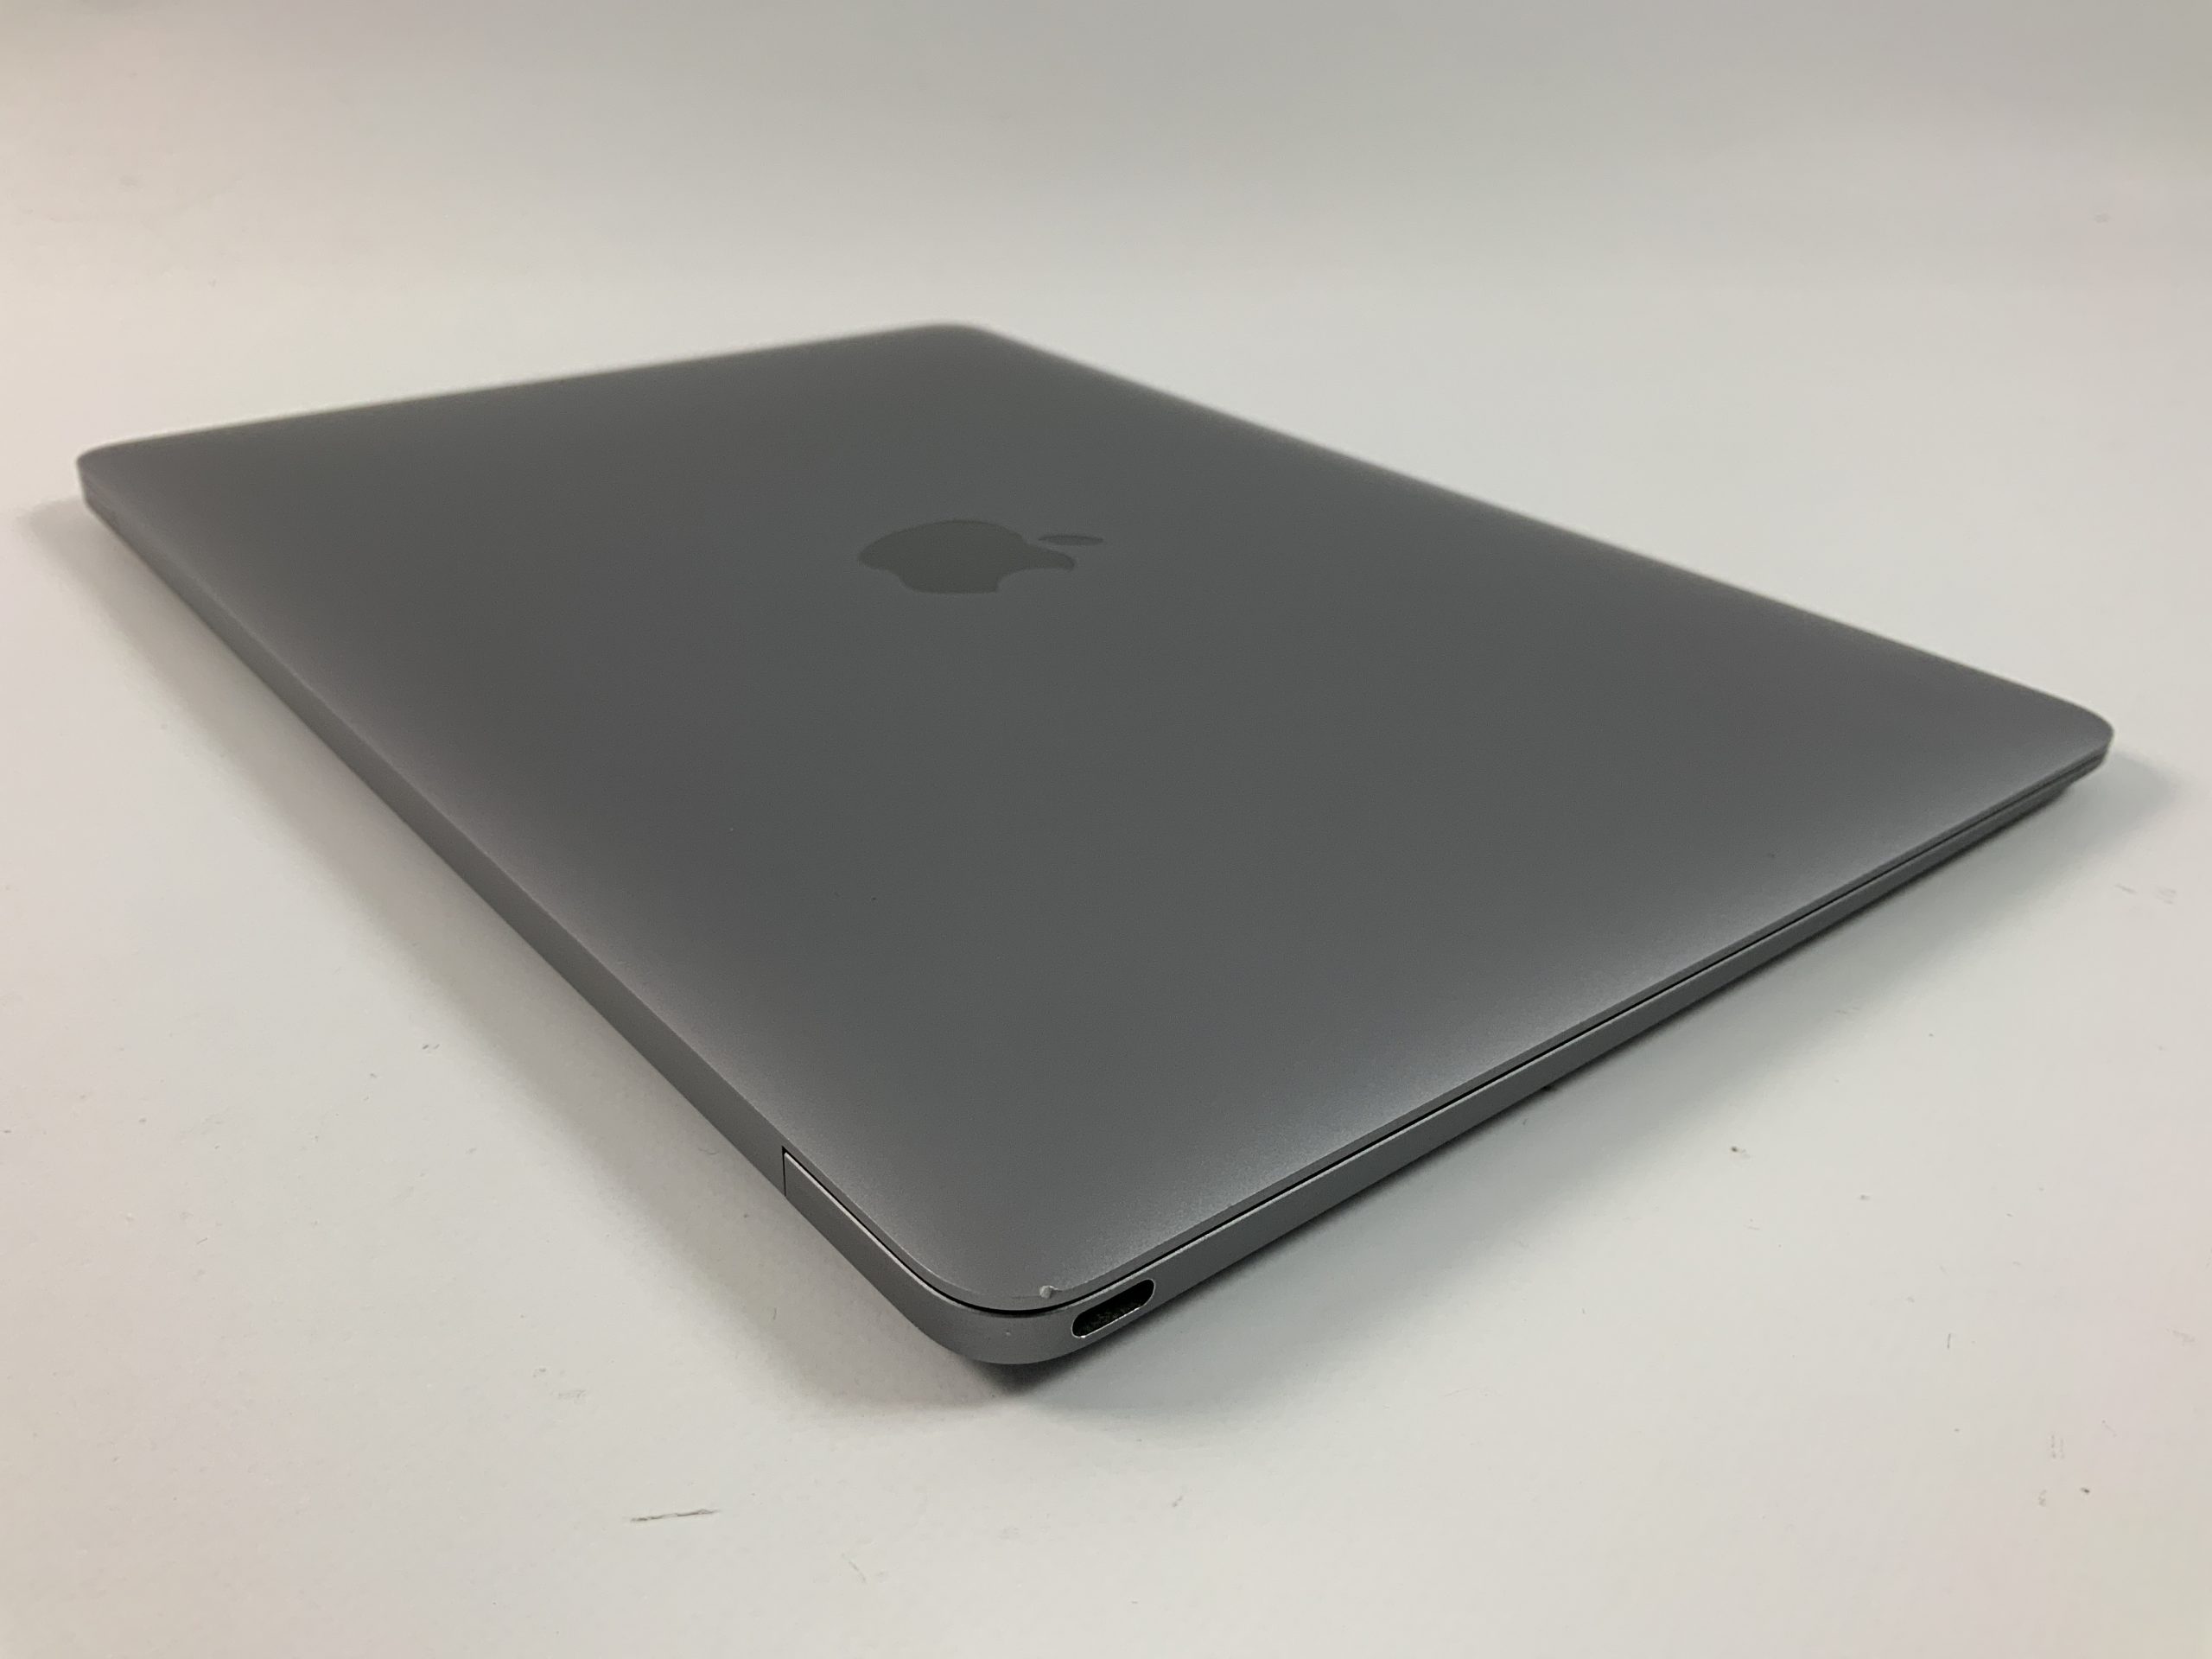 MacBook 12" Mid 2017 (Intel Core i5 1.3 GHz 8 GB RAM 512 GB SSD), Space Gray, Intel Core i5 1.3 GHz, 8 GB RAM, 512 GB SSD, image 4